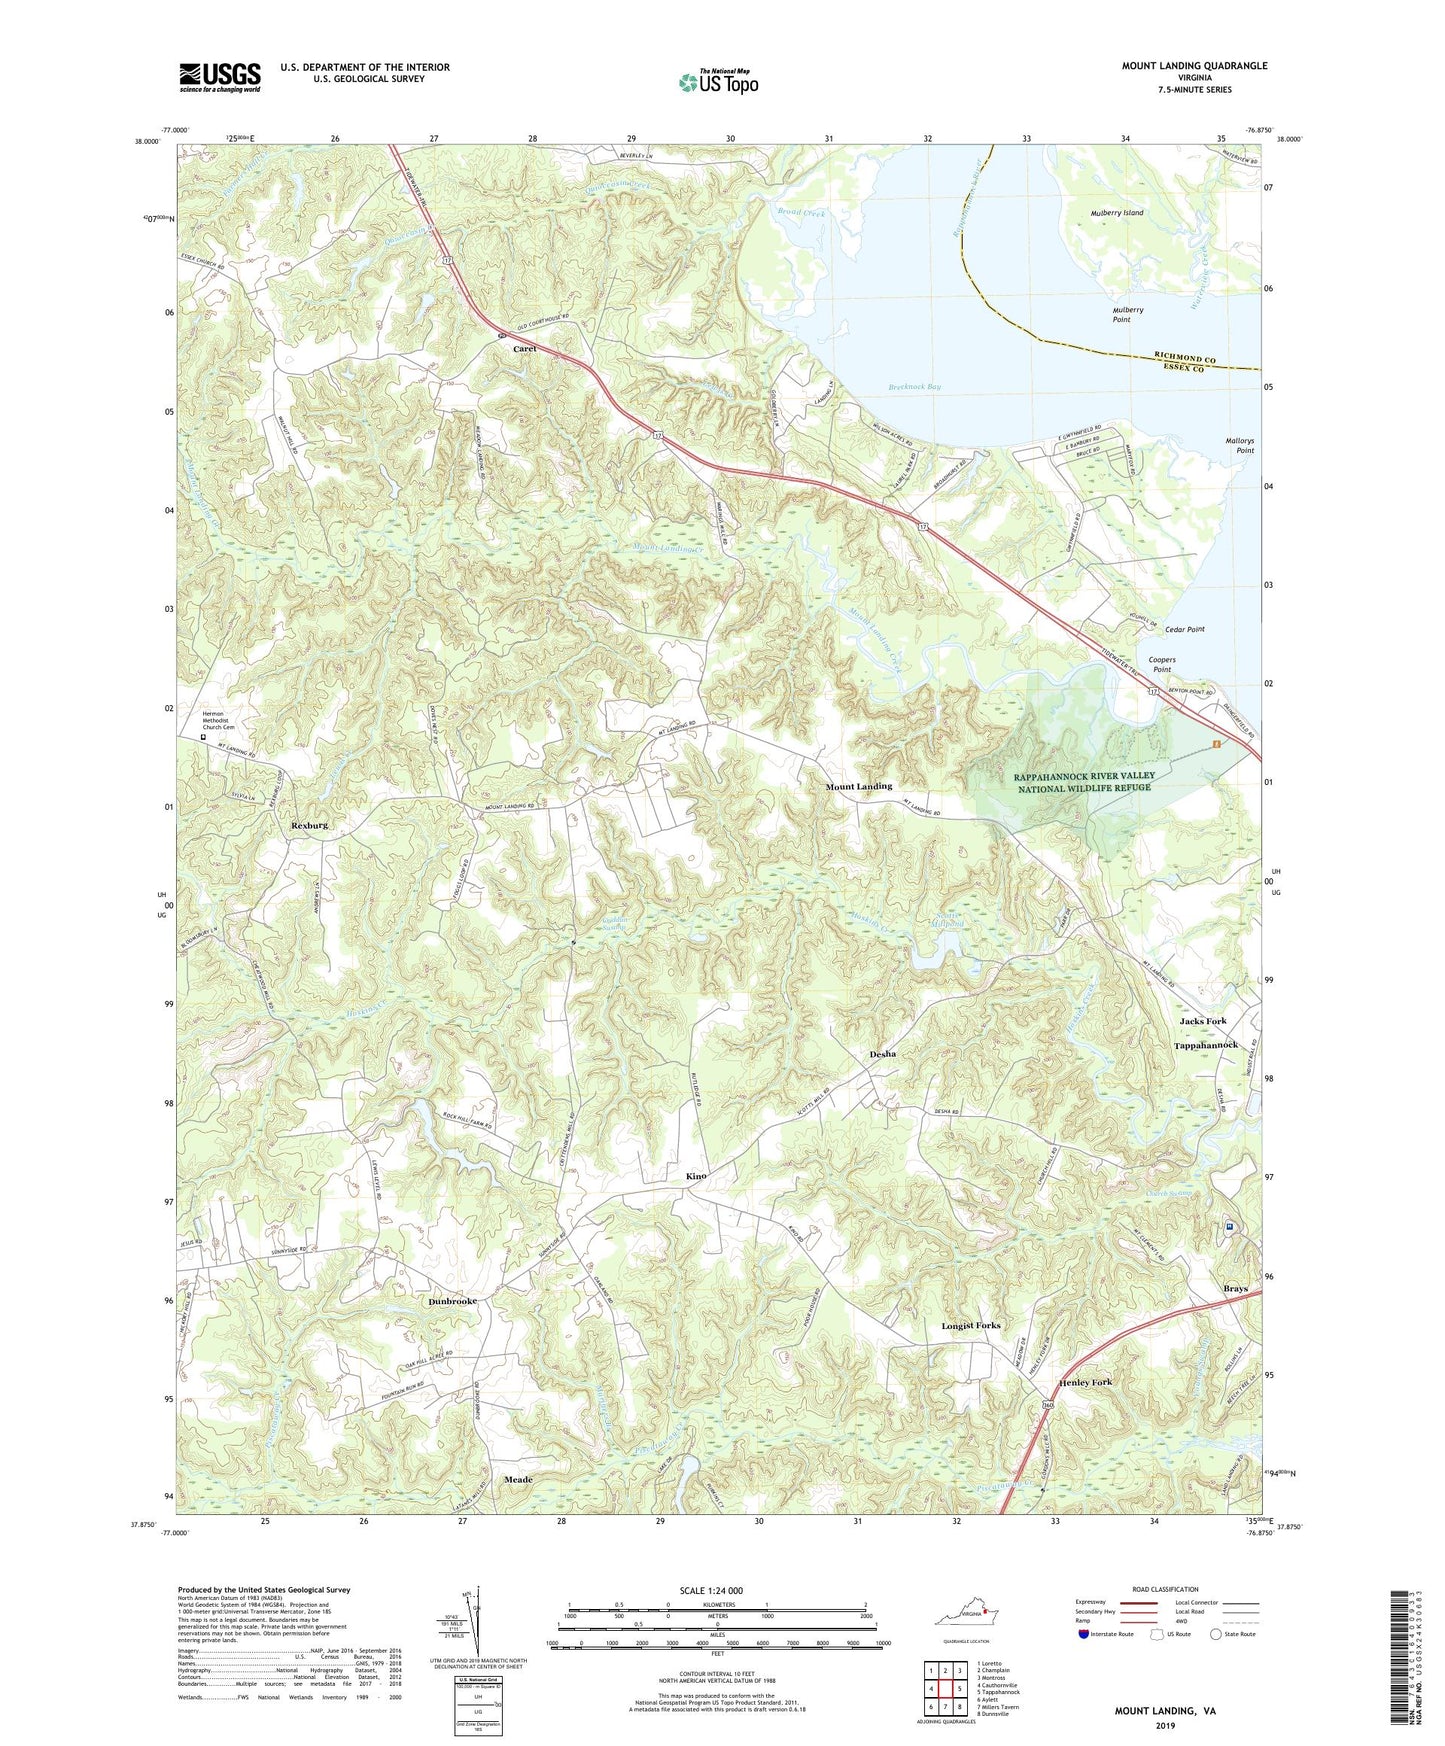 Mount Landing Virginia US Topo Map Image